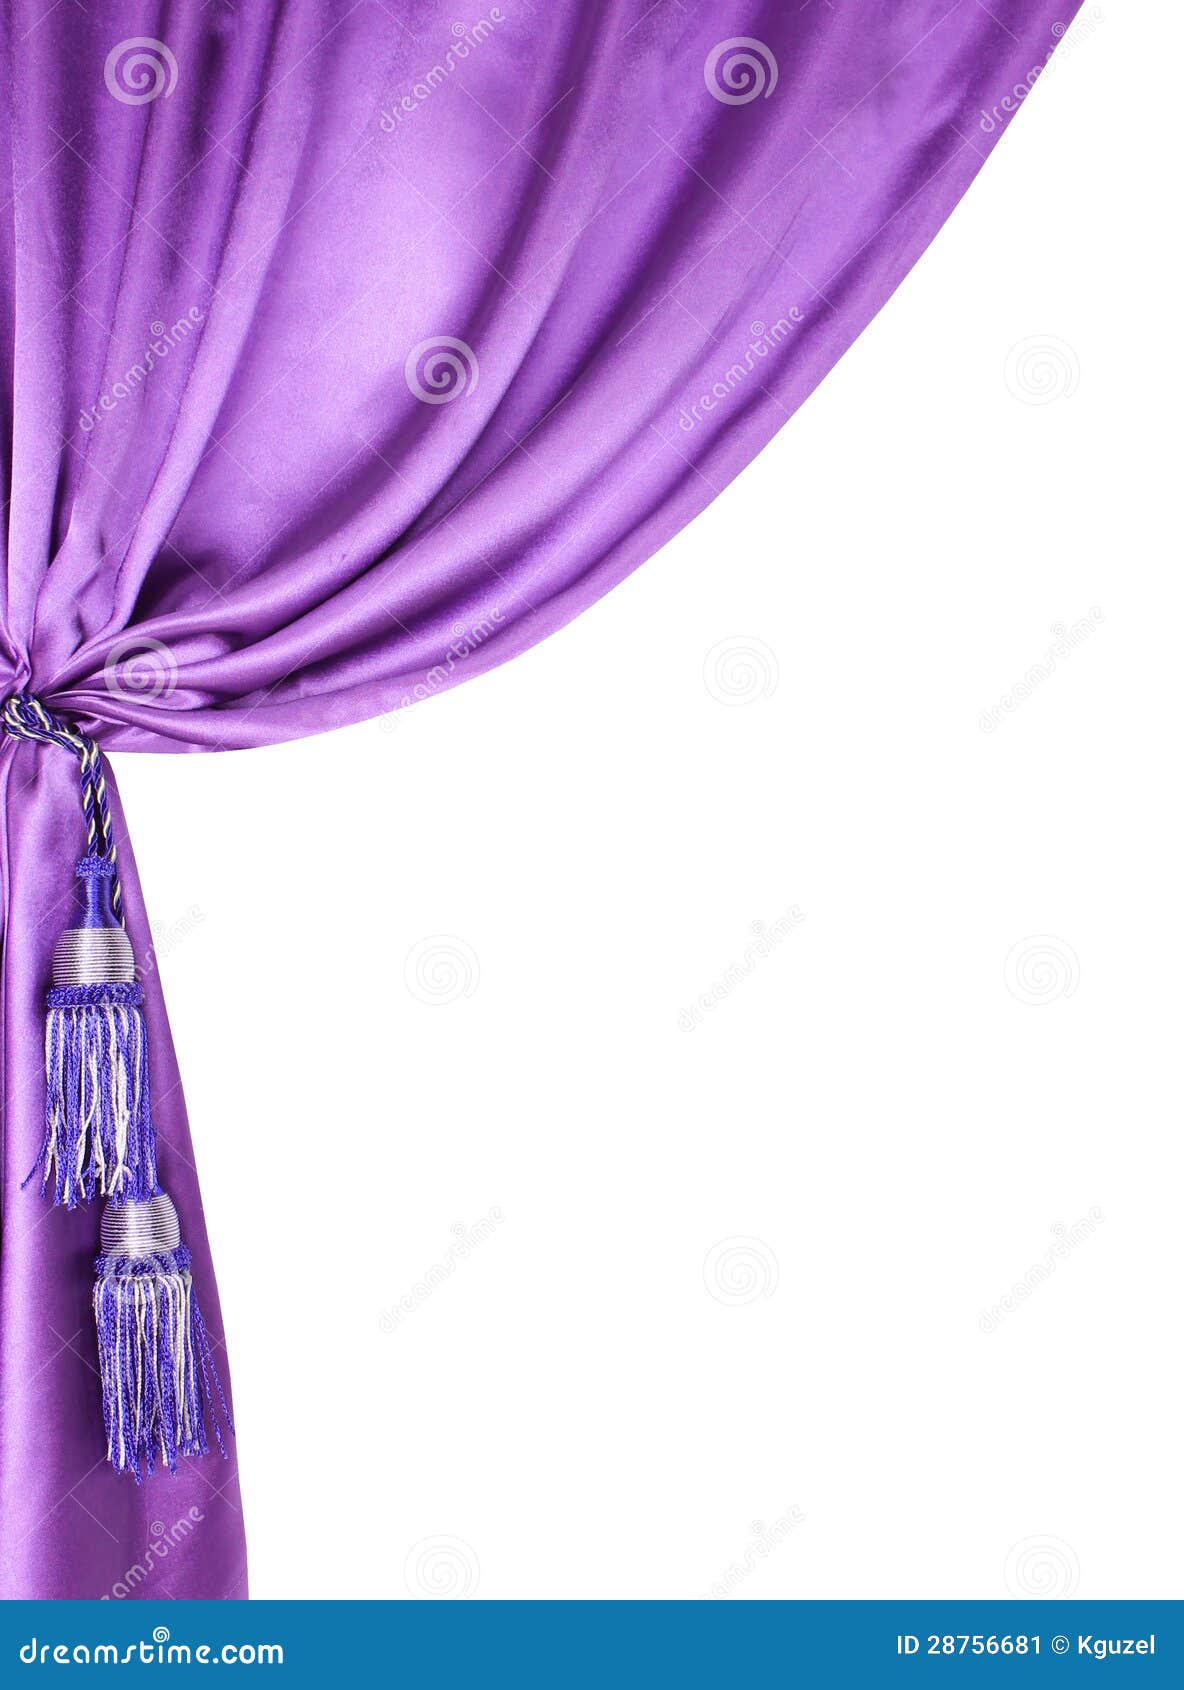 Rèm tơ lụa màu tím đơn giản nhưng vẫn đầy quyến rũ và sang trọng. Hãy xem ngay những hình ảnh rèm tơ lụa màu tím đứng trên nền trắng để cảm nhận được sự thanh lịch trong thiết kế của bạn!